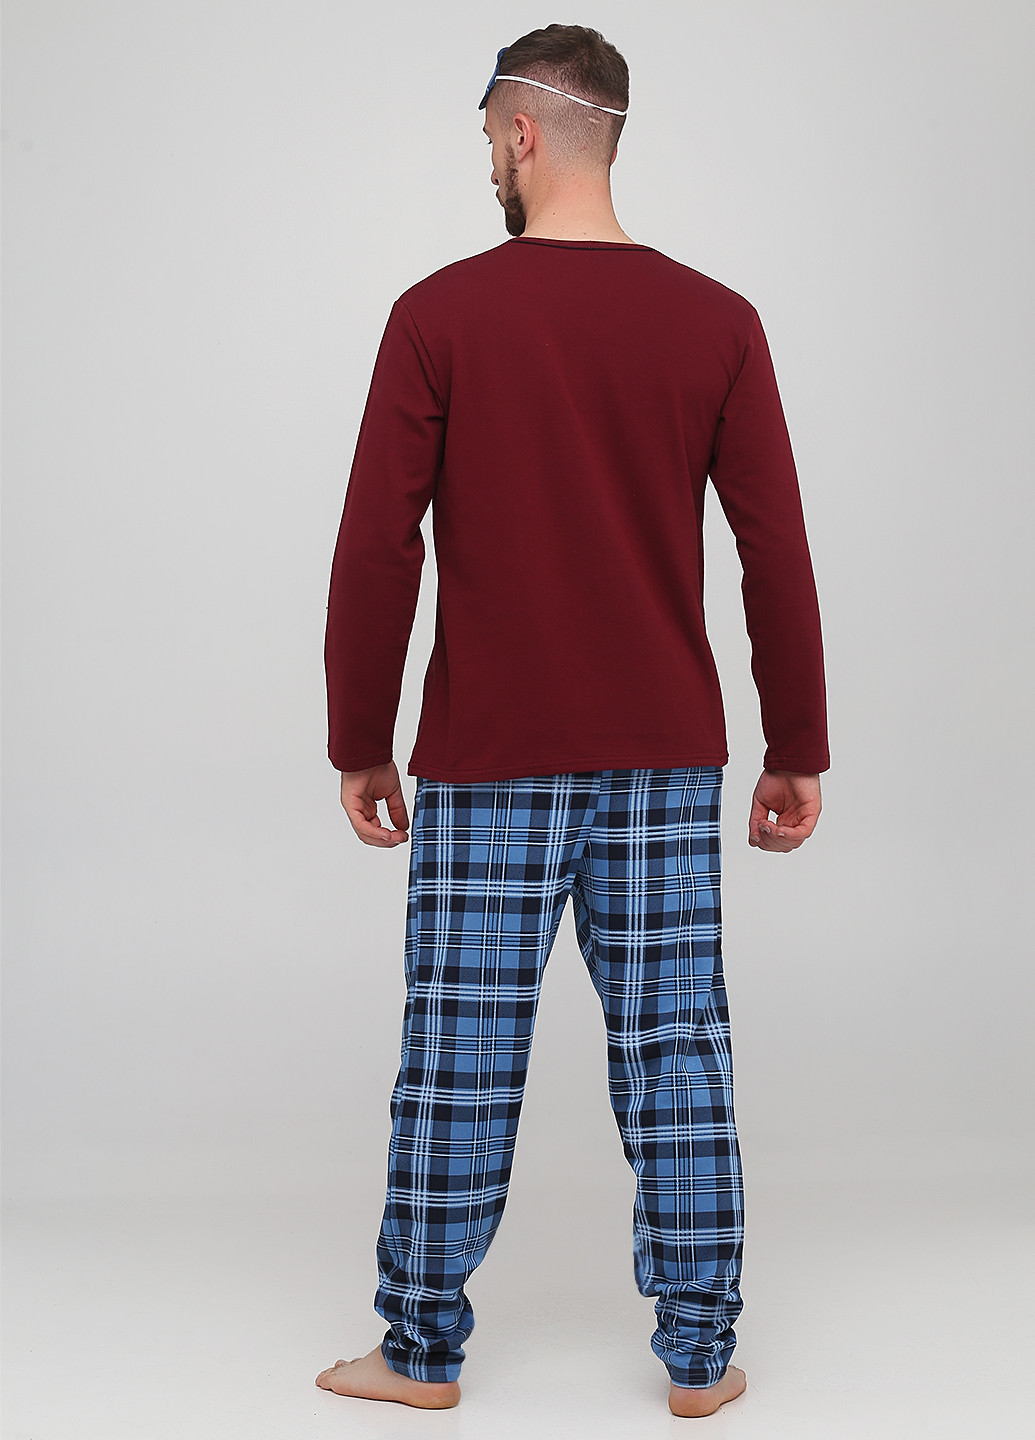 Пижама (лонгслив, брюки, маска для сна) Lucci лонгслив + брюки клетка комбинированная домашняя трикотаж, хлопок